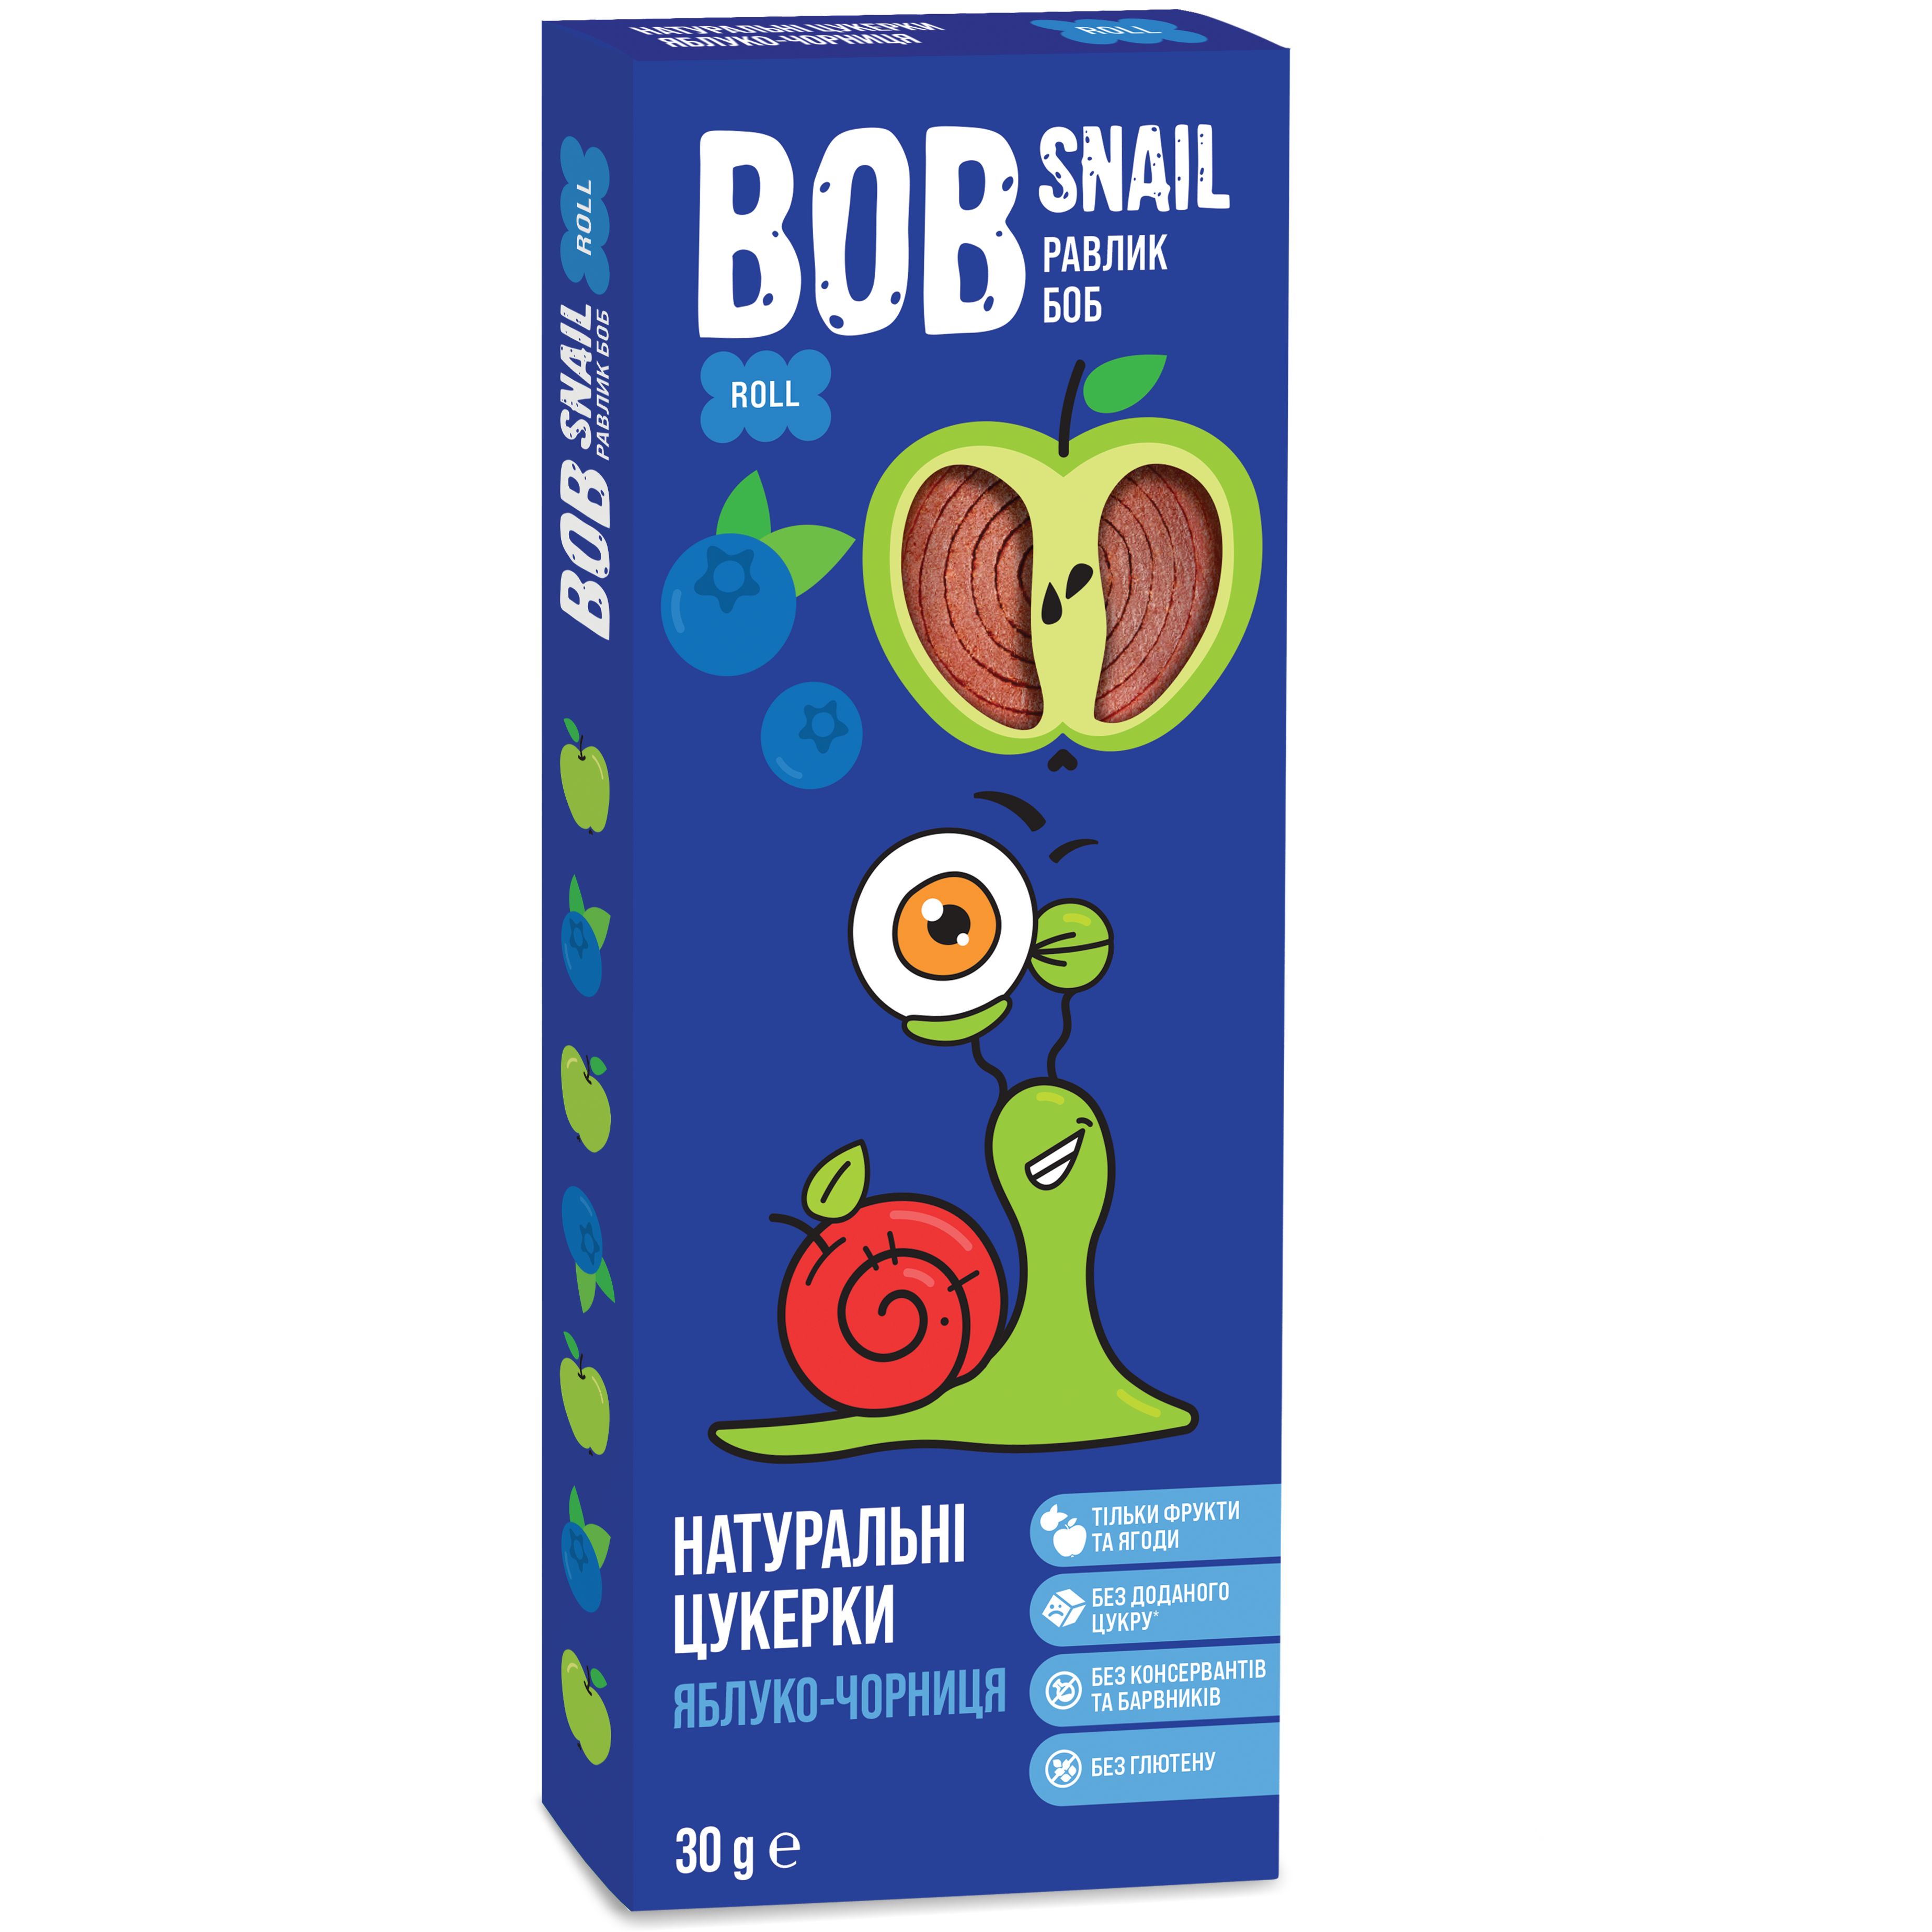 Фруктовые яблочно-черничные конфеты Bob Snail 30 г - фото 1